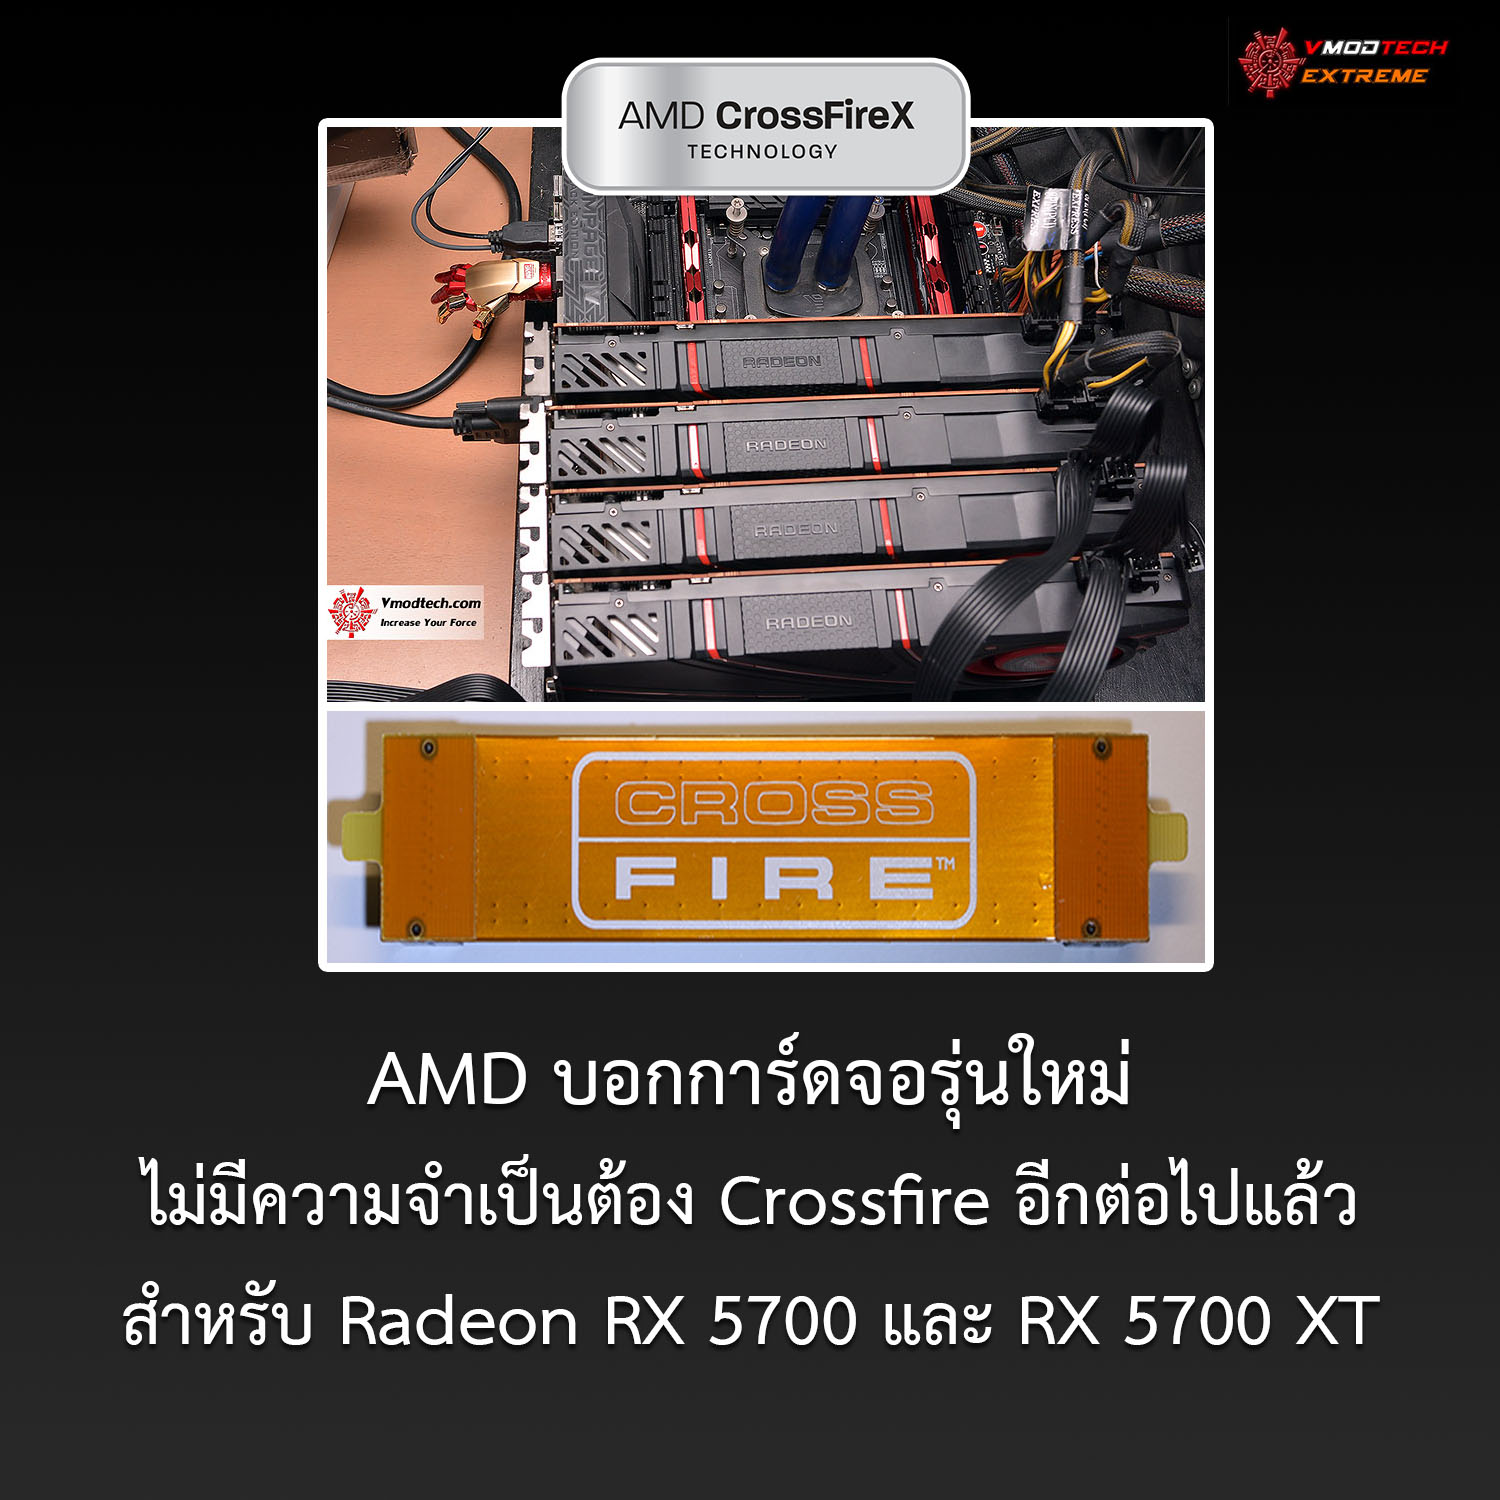 crossfire amd news gpu AMD กล่าวการ์ดจอรุ่นใหม่ๆไม่มีความจำเป็นต้องใช้งานระบบ Crossfire อีกต่อไป 